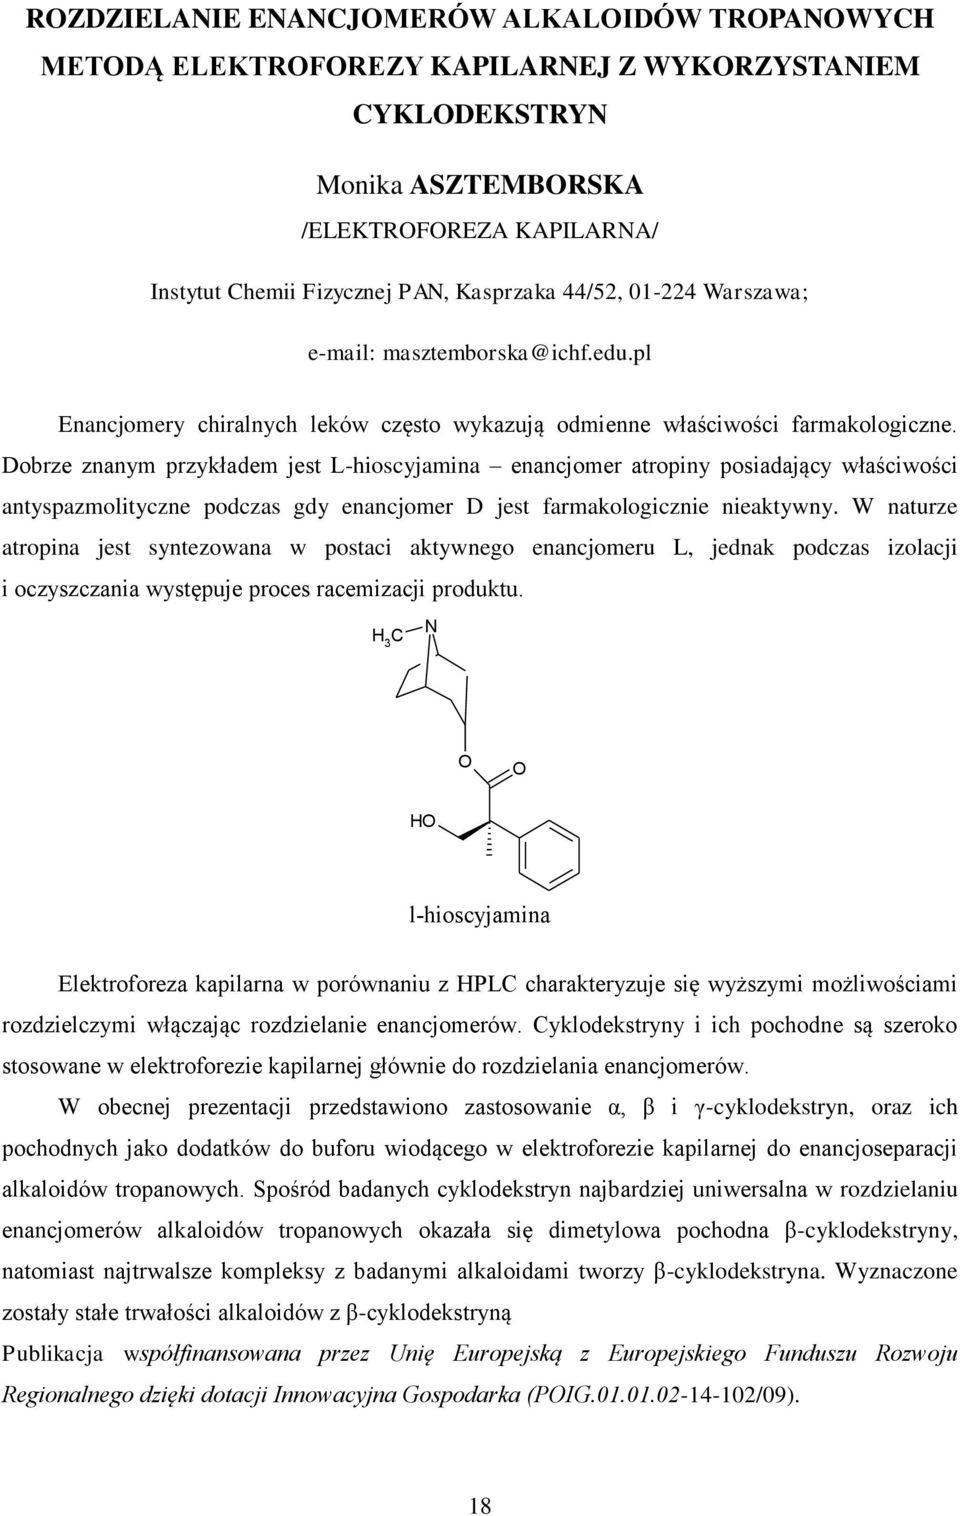 Dobrze znanym przykładem jest L-hioscyjamina enancjomer atropiny posiadający właściwości antyspazmolityczne podczas gdy enancjomer D jest farmakologicznie nieaktywny.